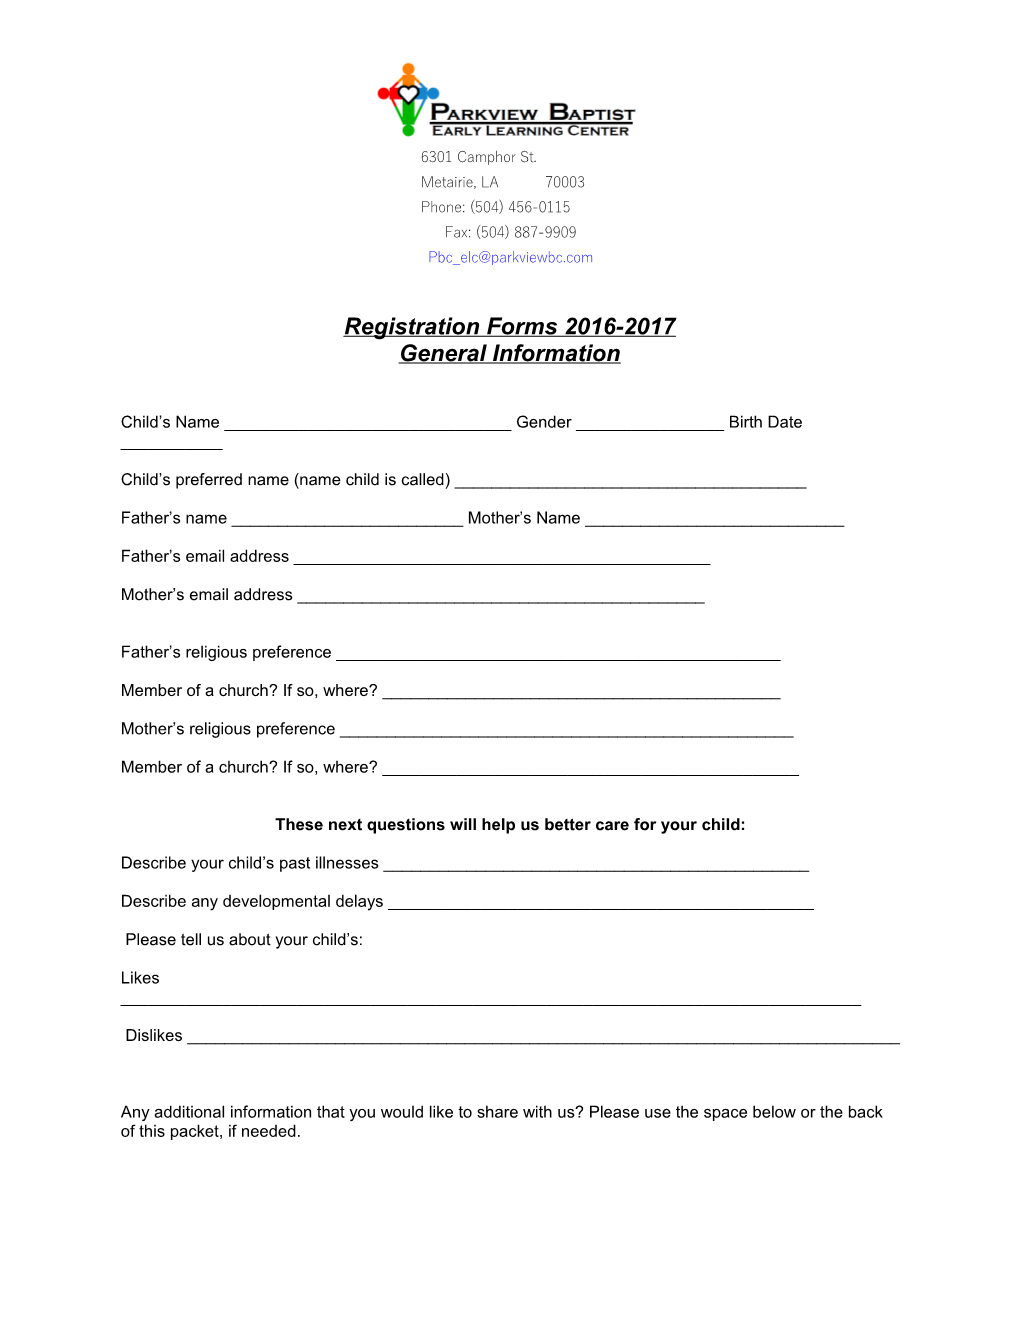 Registration Forms 2016-2017